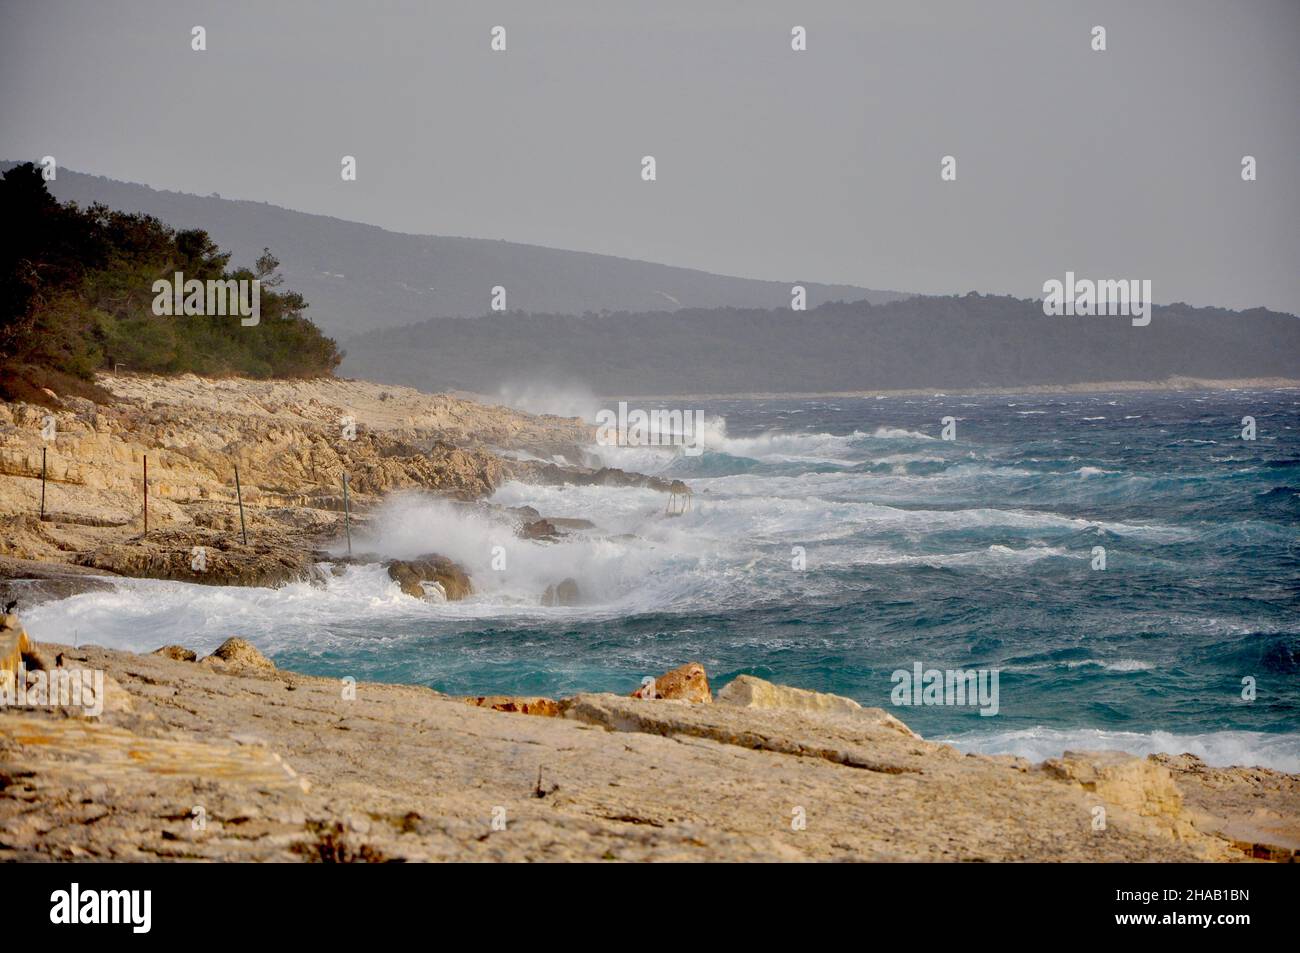 Sturm auf der Inselküste mit Wellen und starkem Wind, Kroatien. Wellen krachen auf Felsen. Insel Losinj. Stockfoto